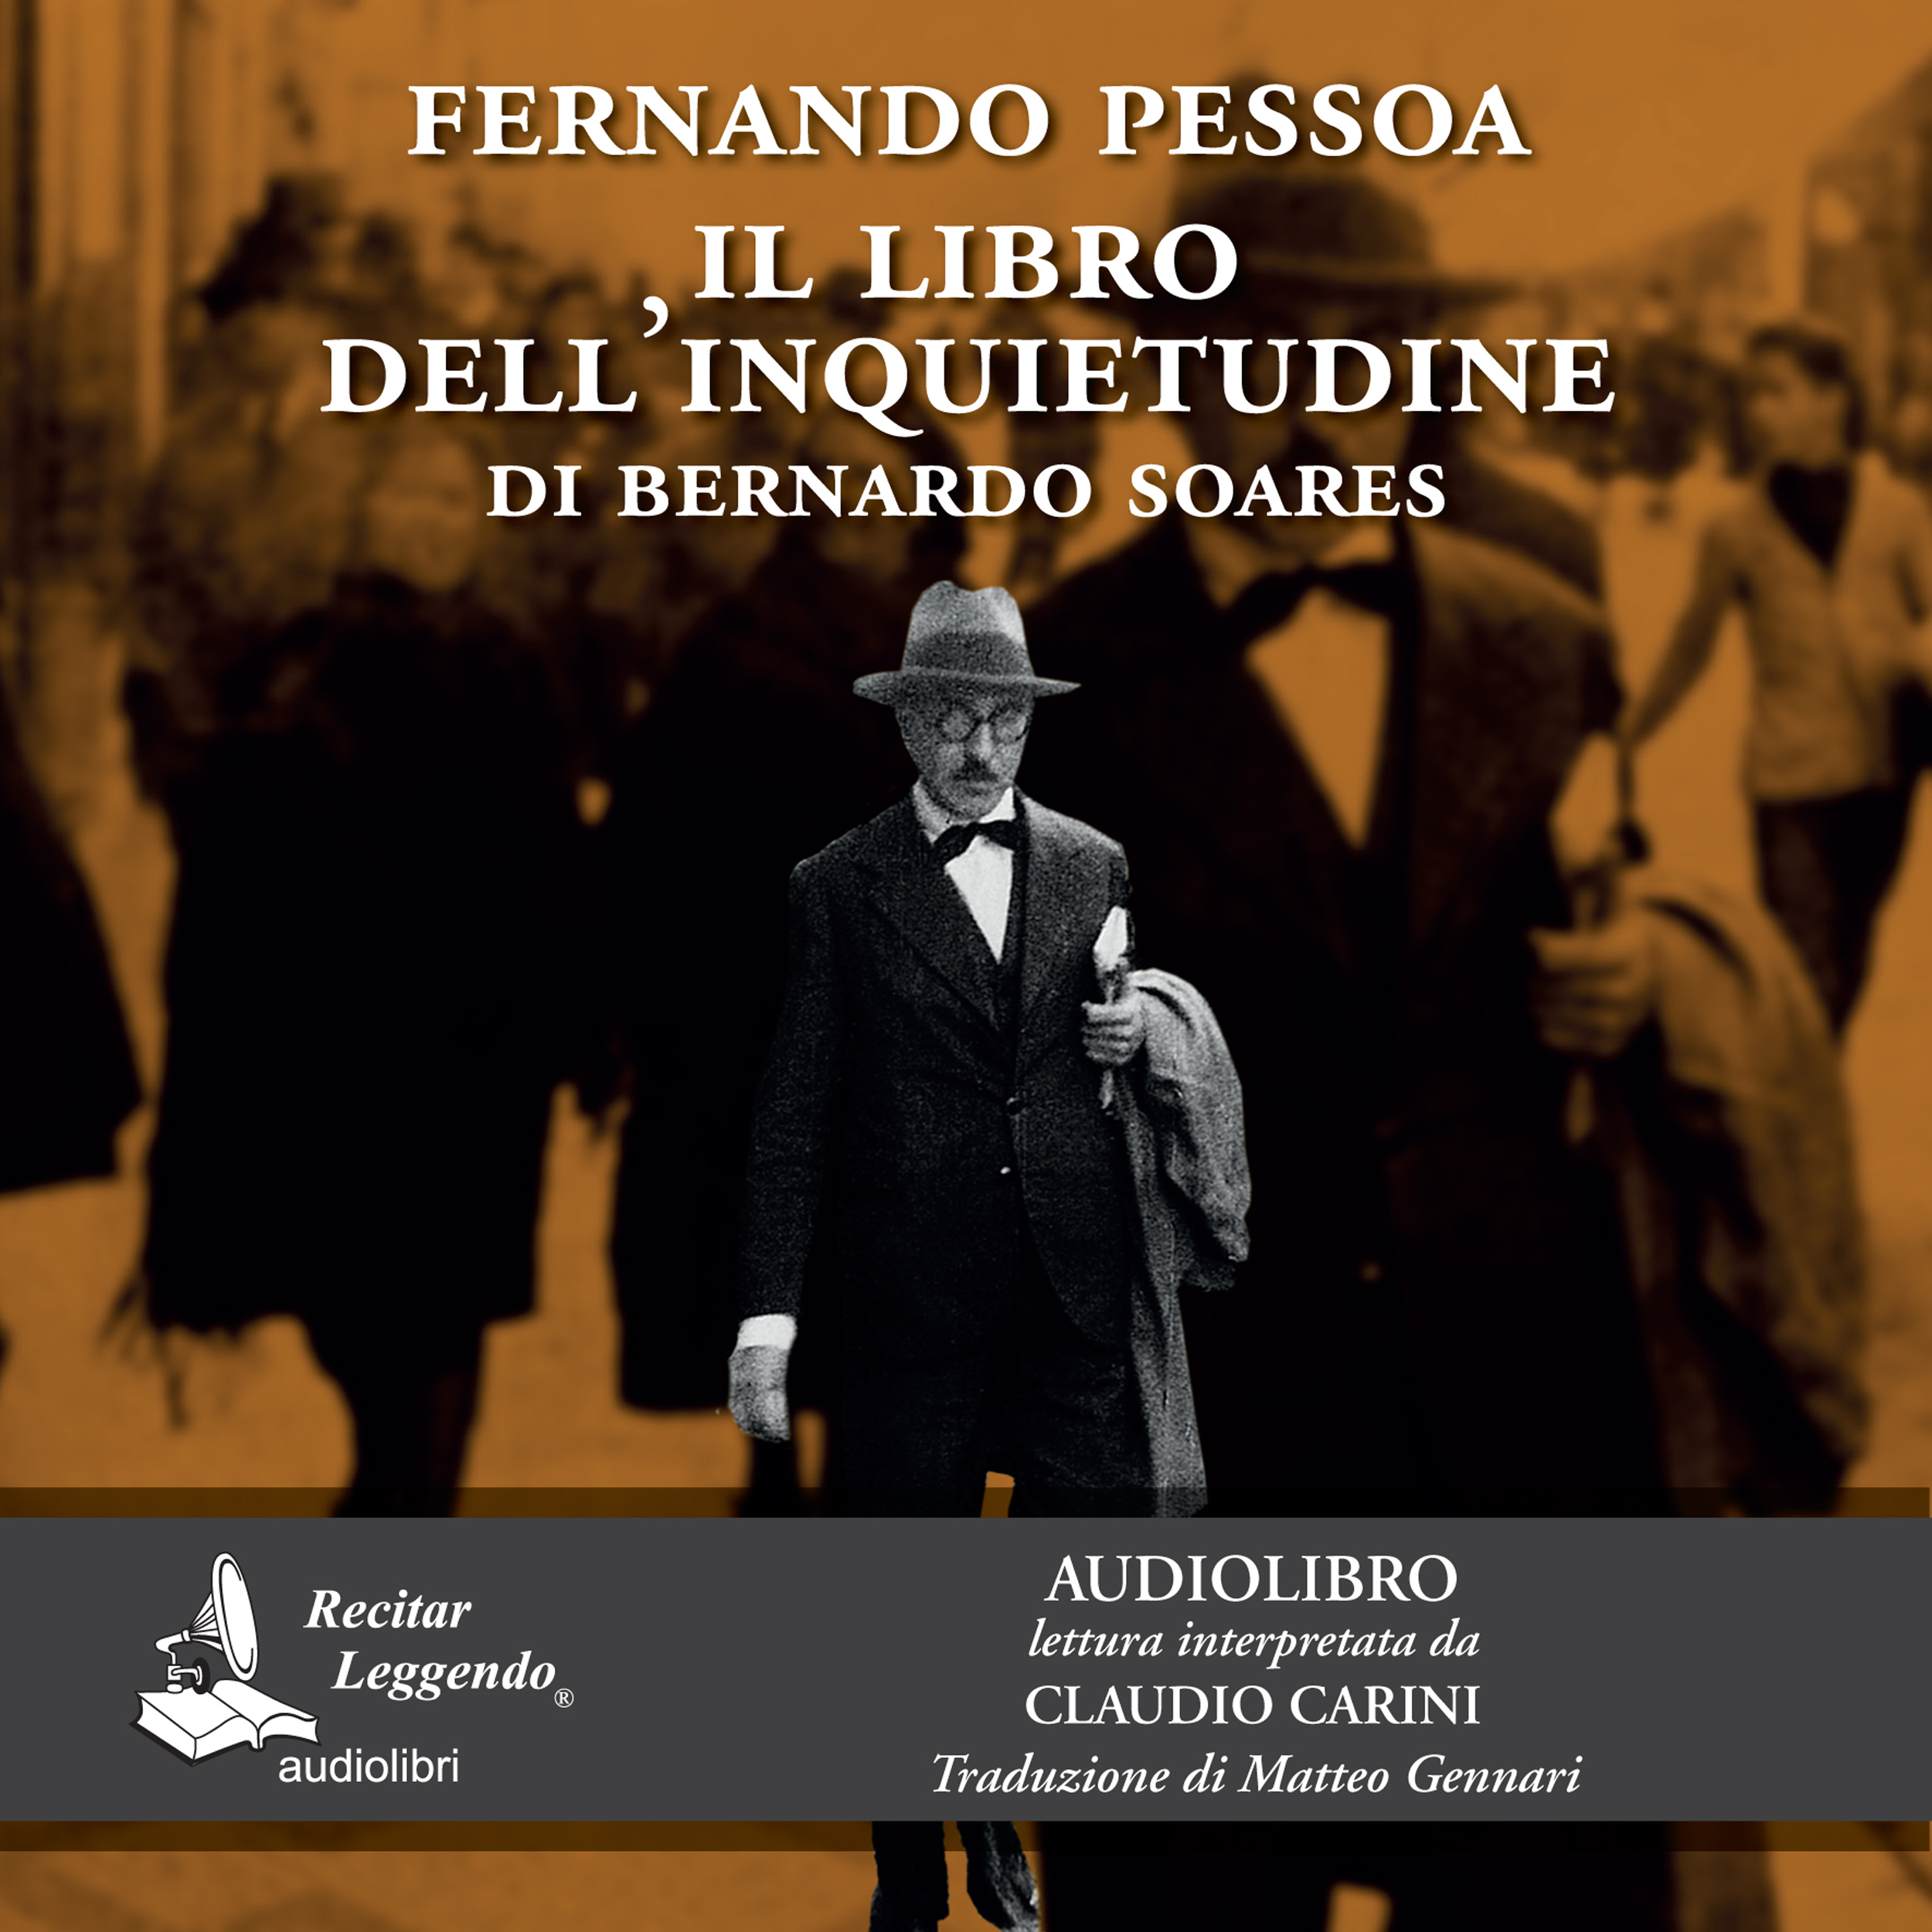 Recitar Leggendo presenta l’audiolibro e l’ebook dell’opera “Il libro dell’inquietudine” di Fernando Pessoa